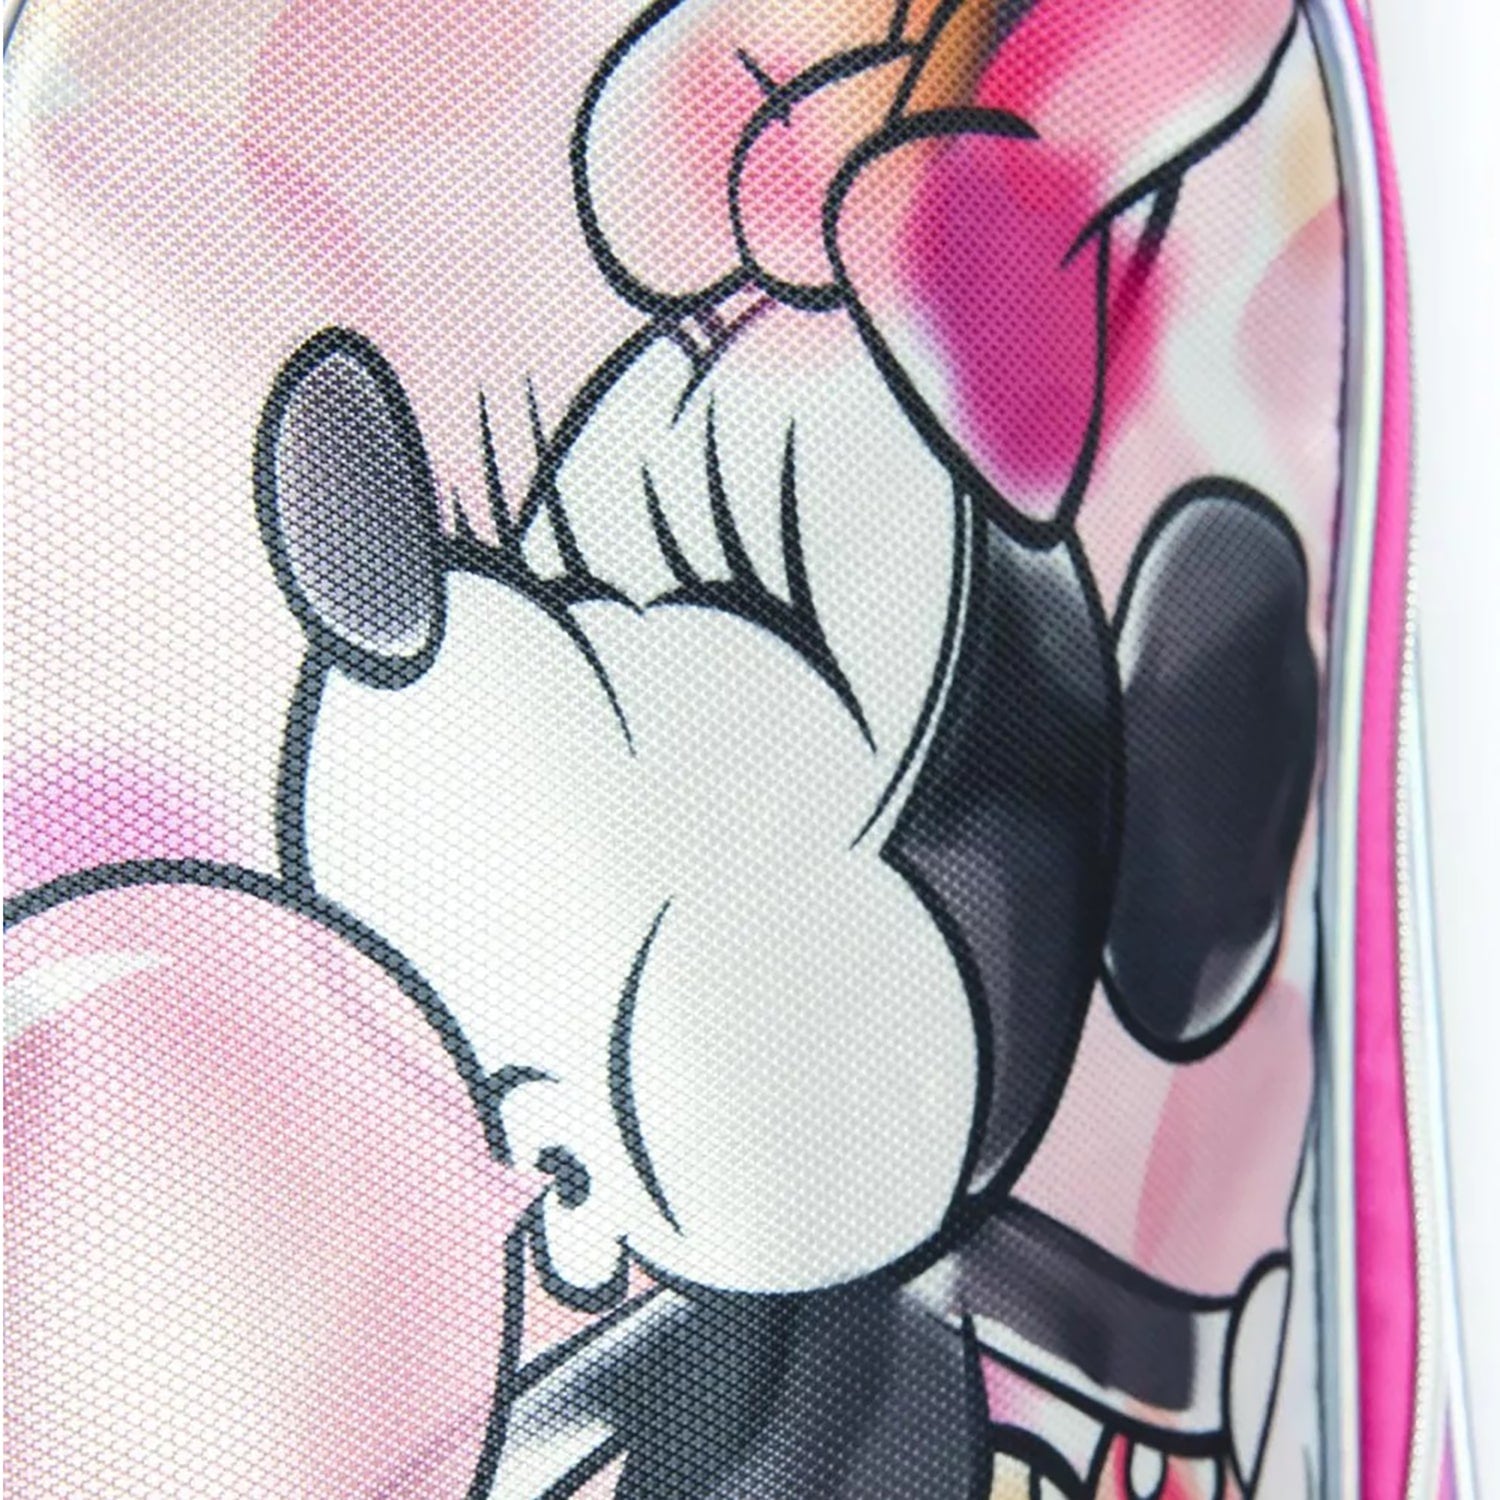 Zaino Disney Minnie Mouse zainetto ufficiale con bretelle bambini scuola 4314